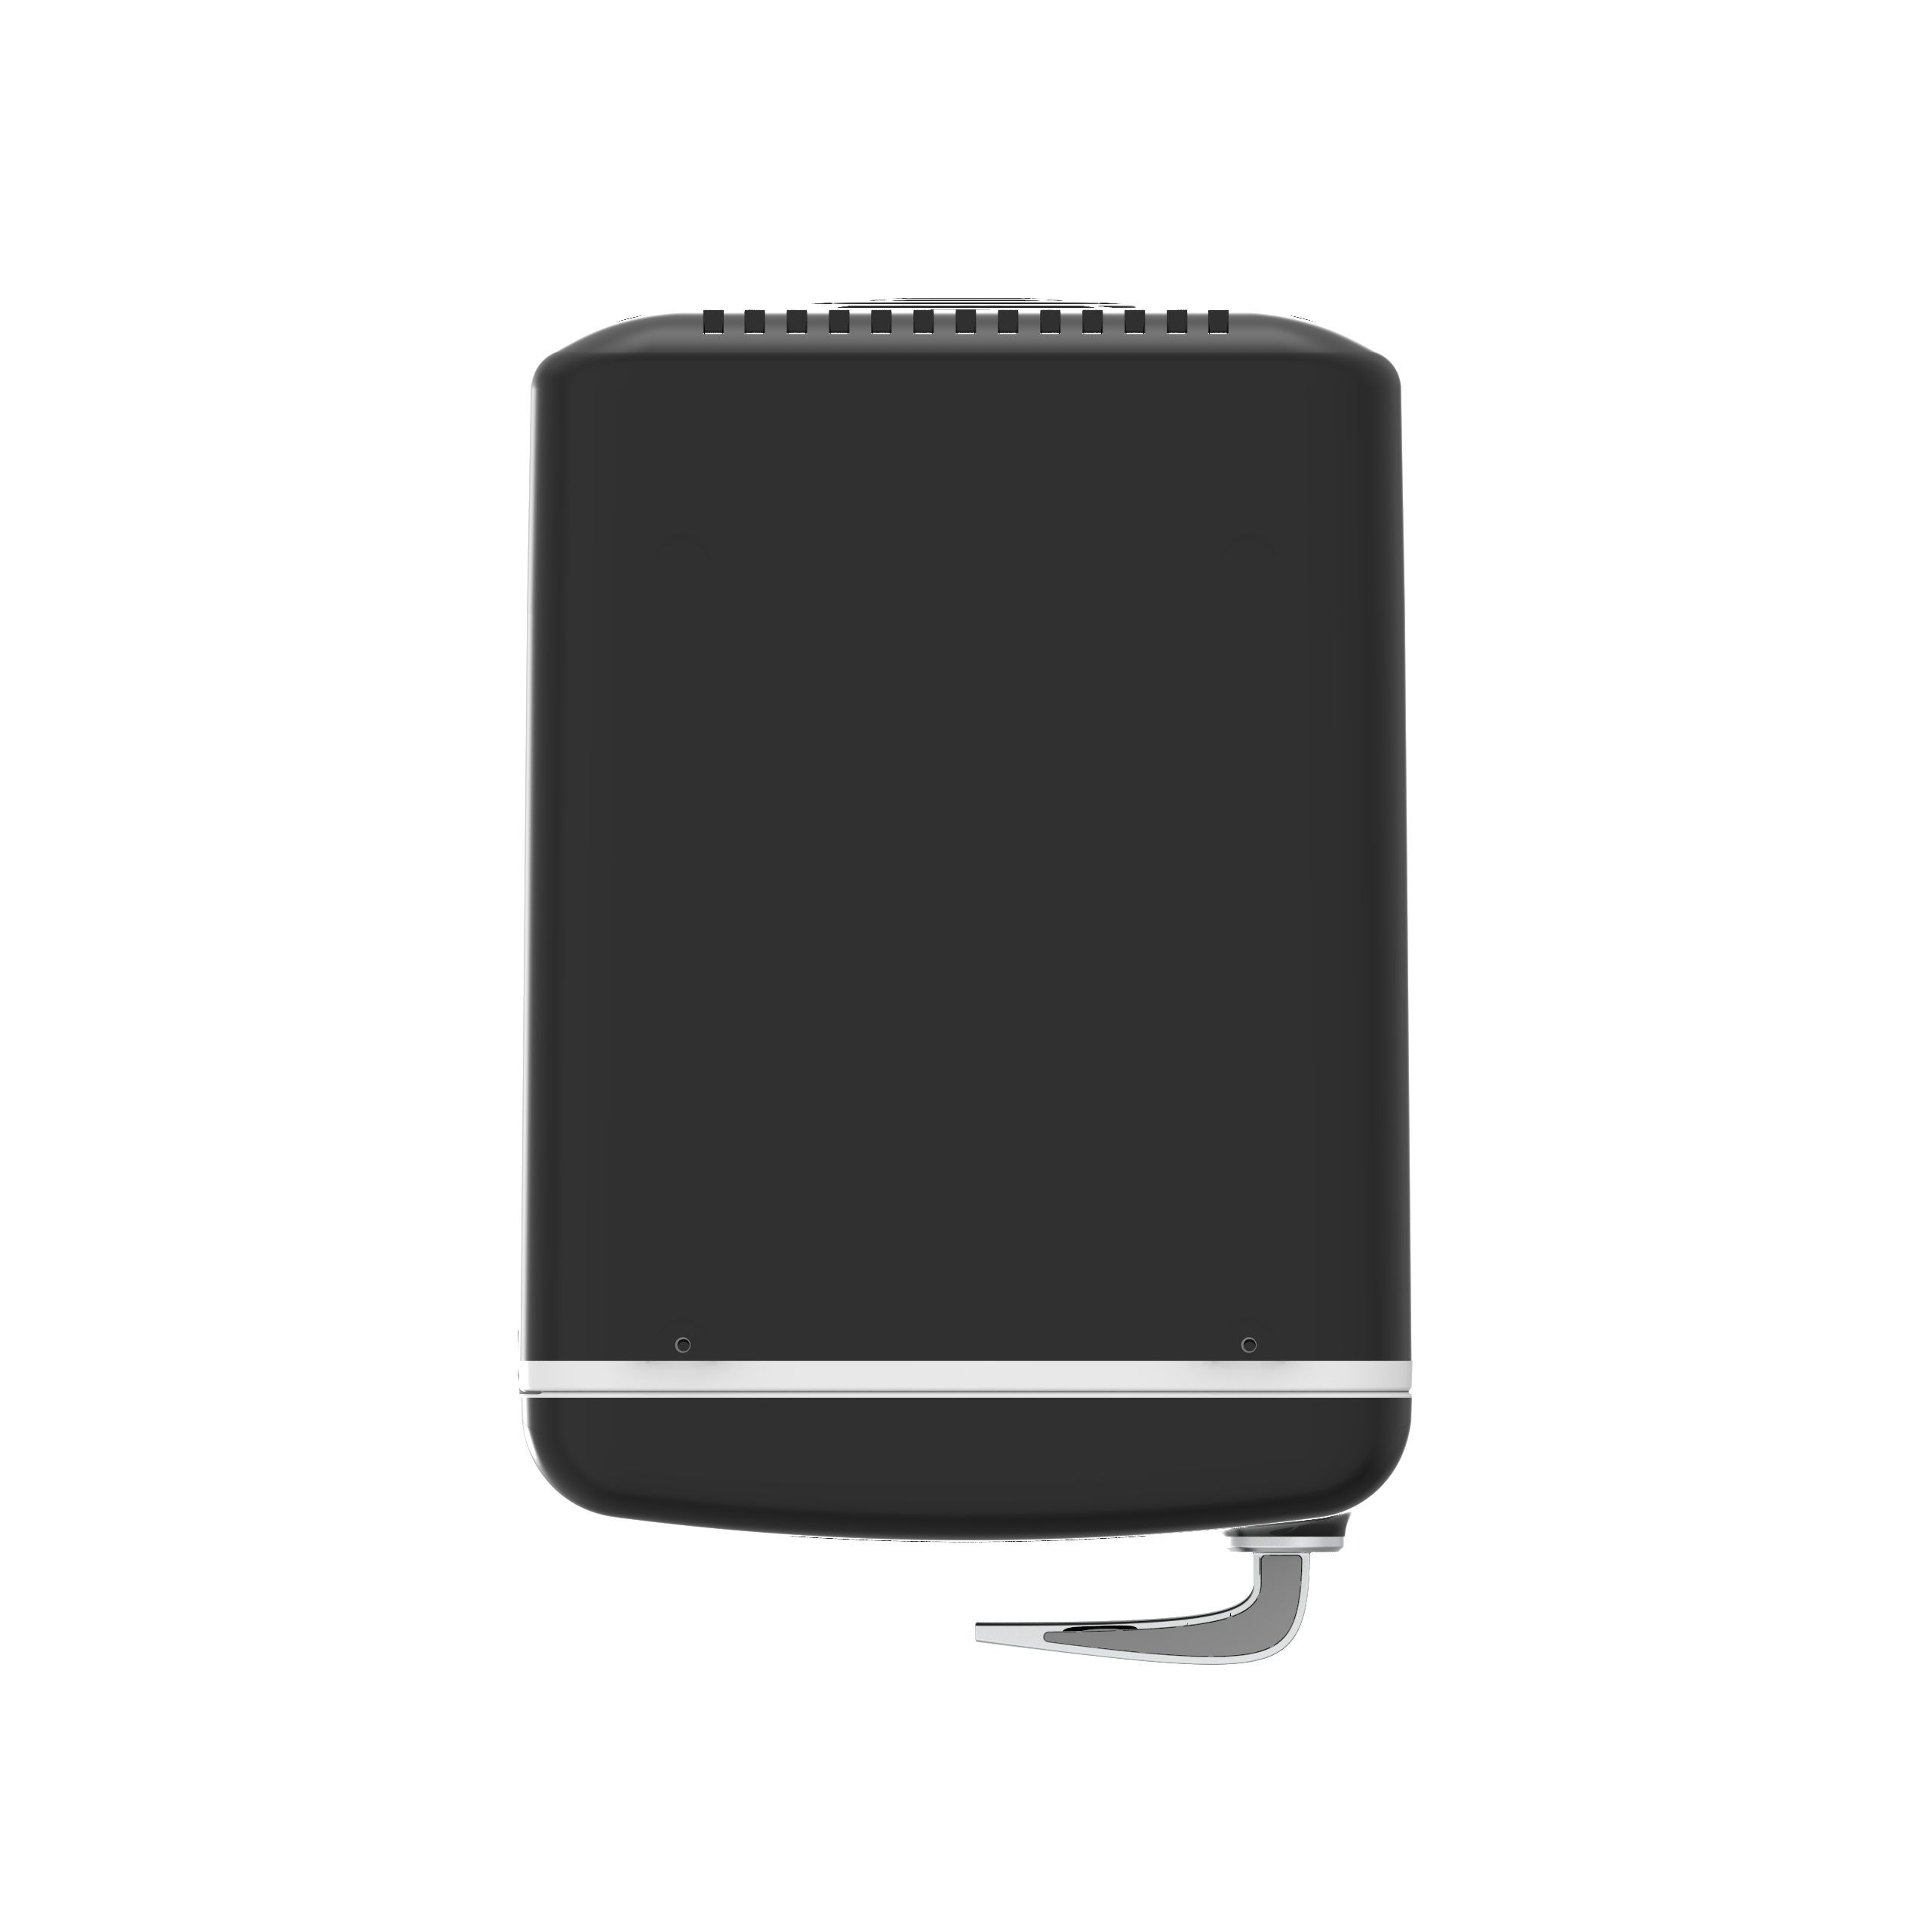 Frigidaire Retro 6-Can Mini Cooler, Black, EFMIS175 - image 5 of 11